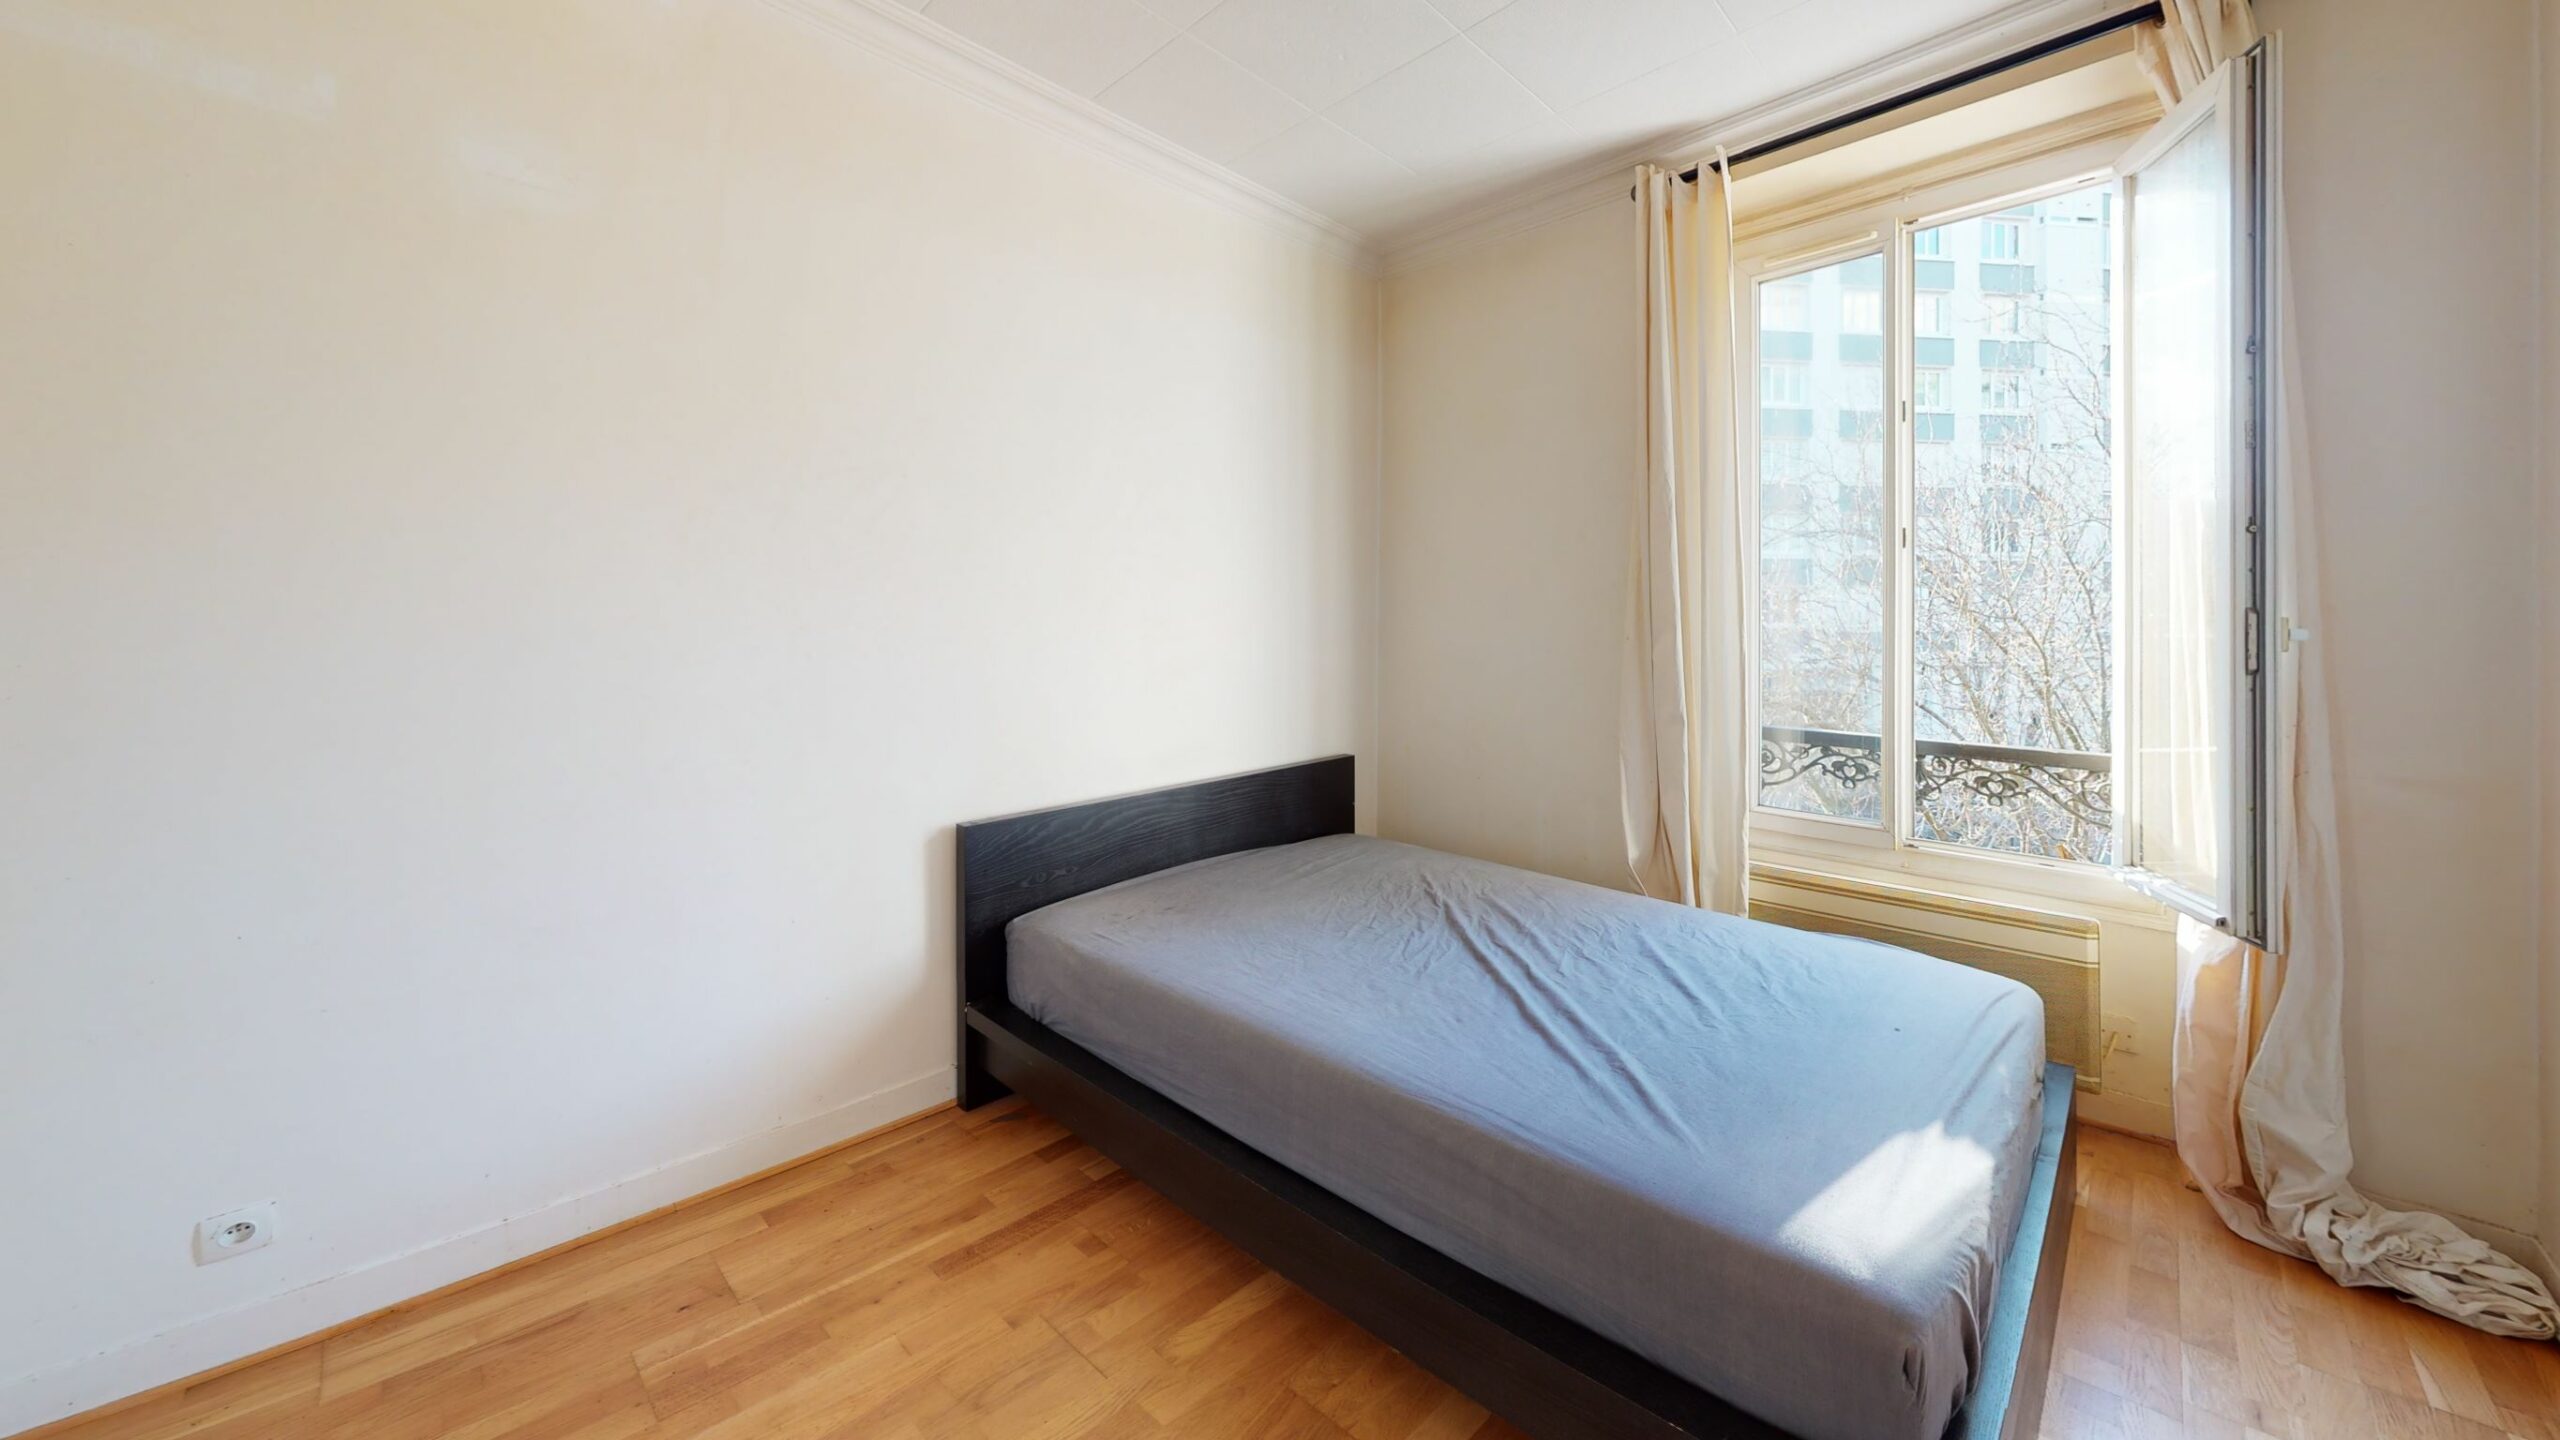 location appartement maisons alfort: 3 pièces 50 m² meublé, refait à neuf, chambre parentale